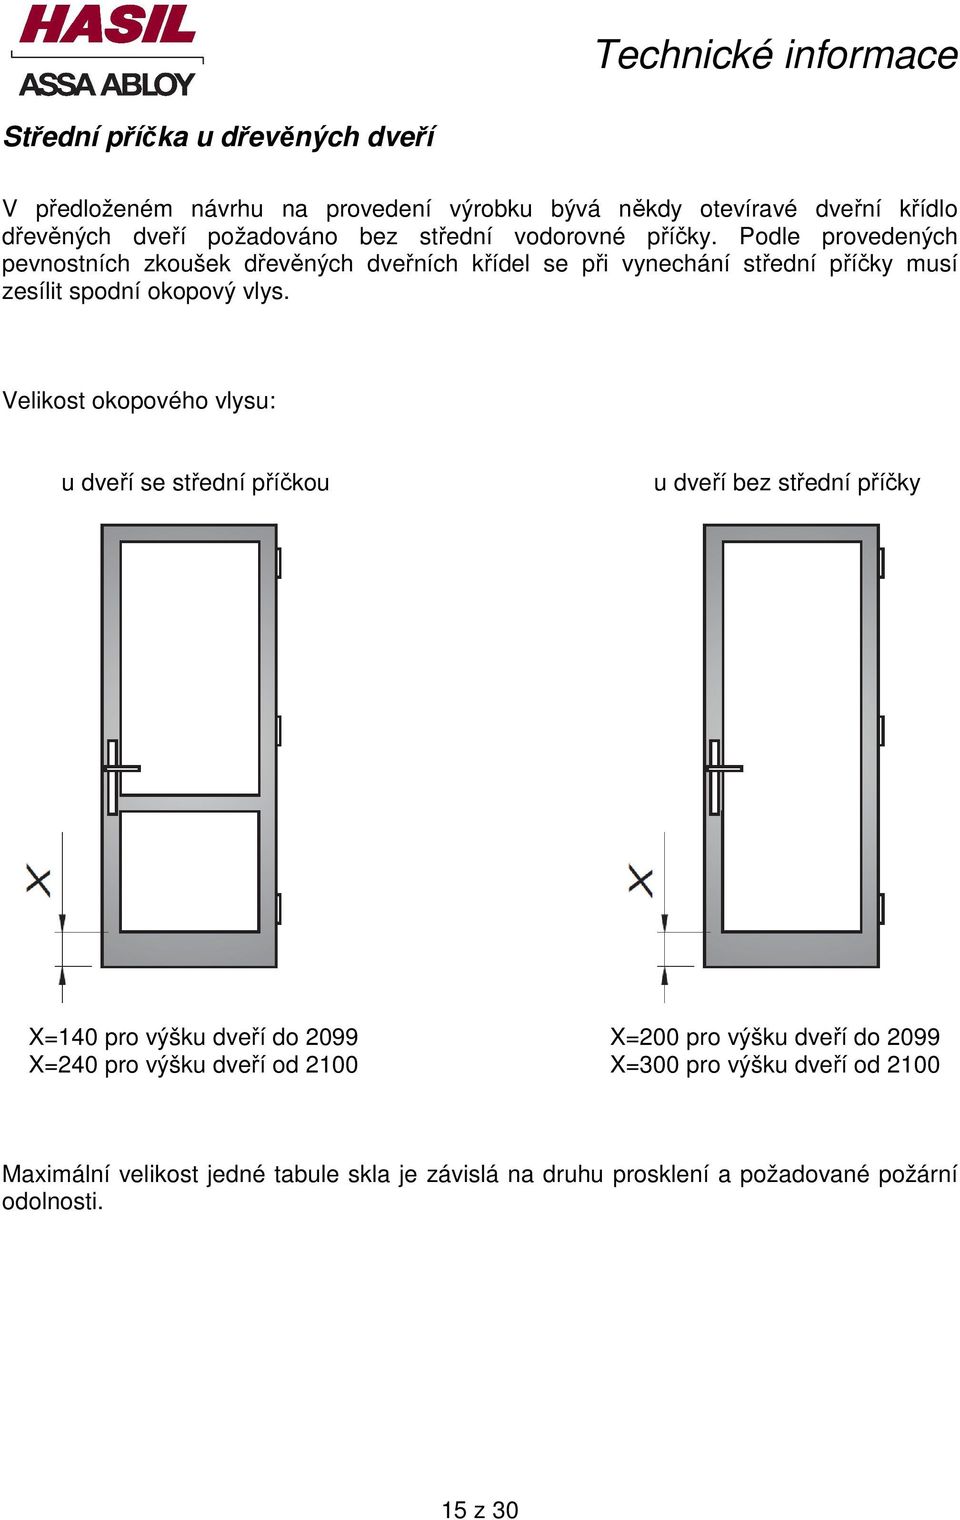 Velikost okopového vlysu: u dveří se střední příčkou u dveří bez střední příčky X=140 pro výšku dveří do 2099 X=200 pro výšku dveří do 2099 X=240 pro